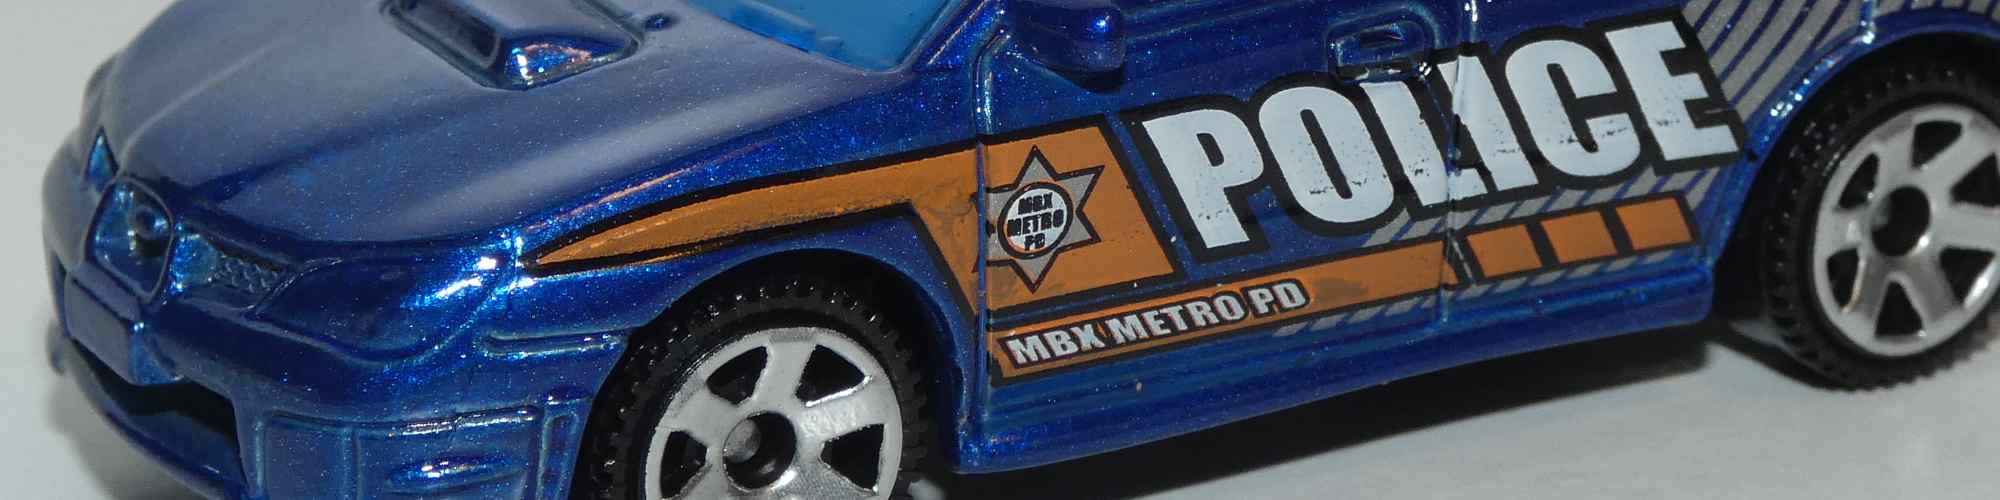 Matchbox – Subaru Impreza WRX 2007